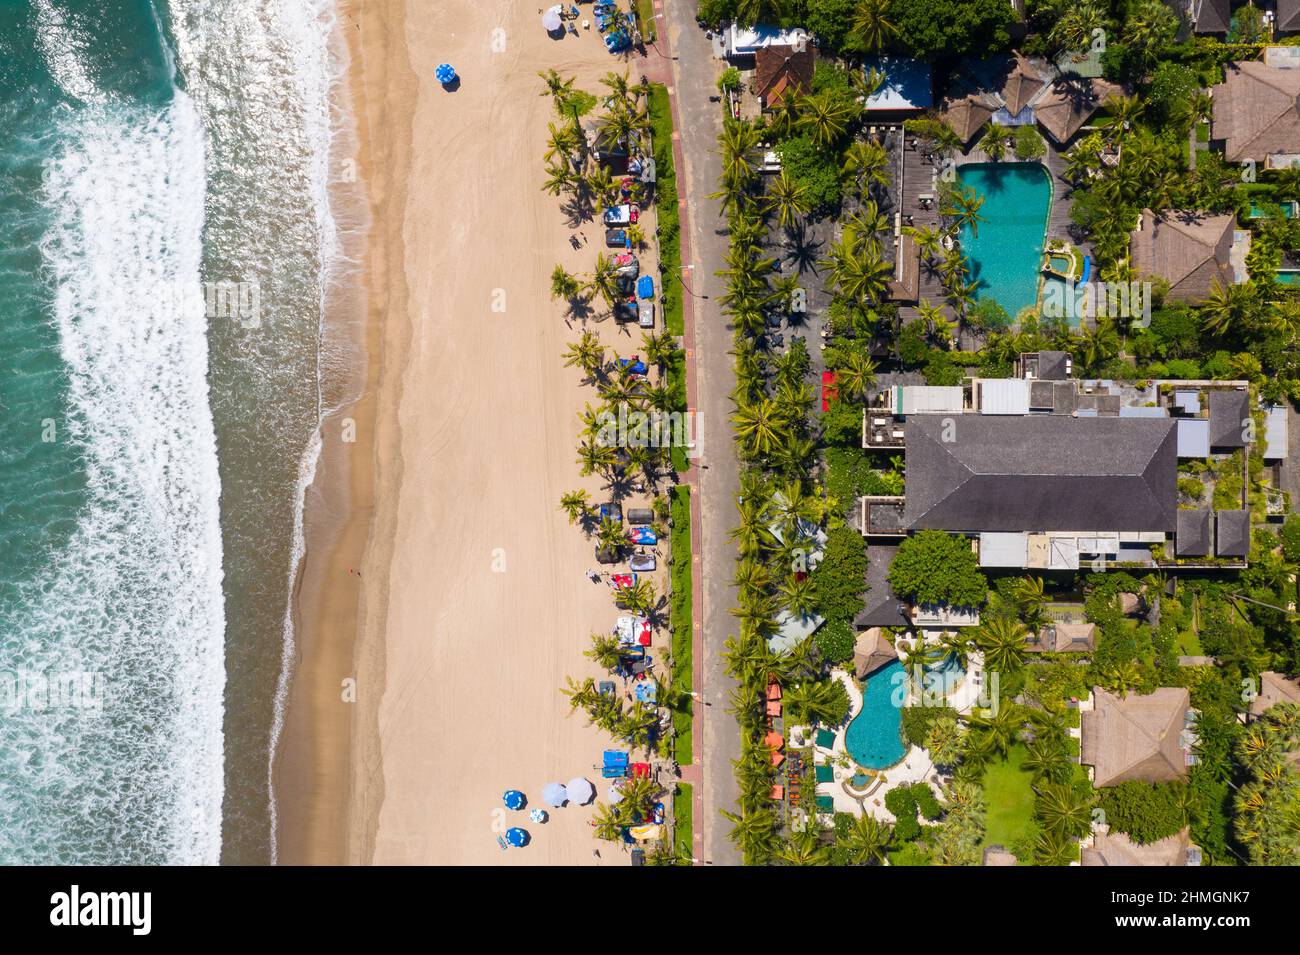 Vista de arriba abajo de la famosa playa de Kuta en Seminyak en el sur de Bali con un lujoso complejo frente al mar en Indonesia Foto de stock